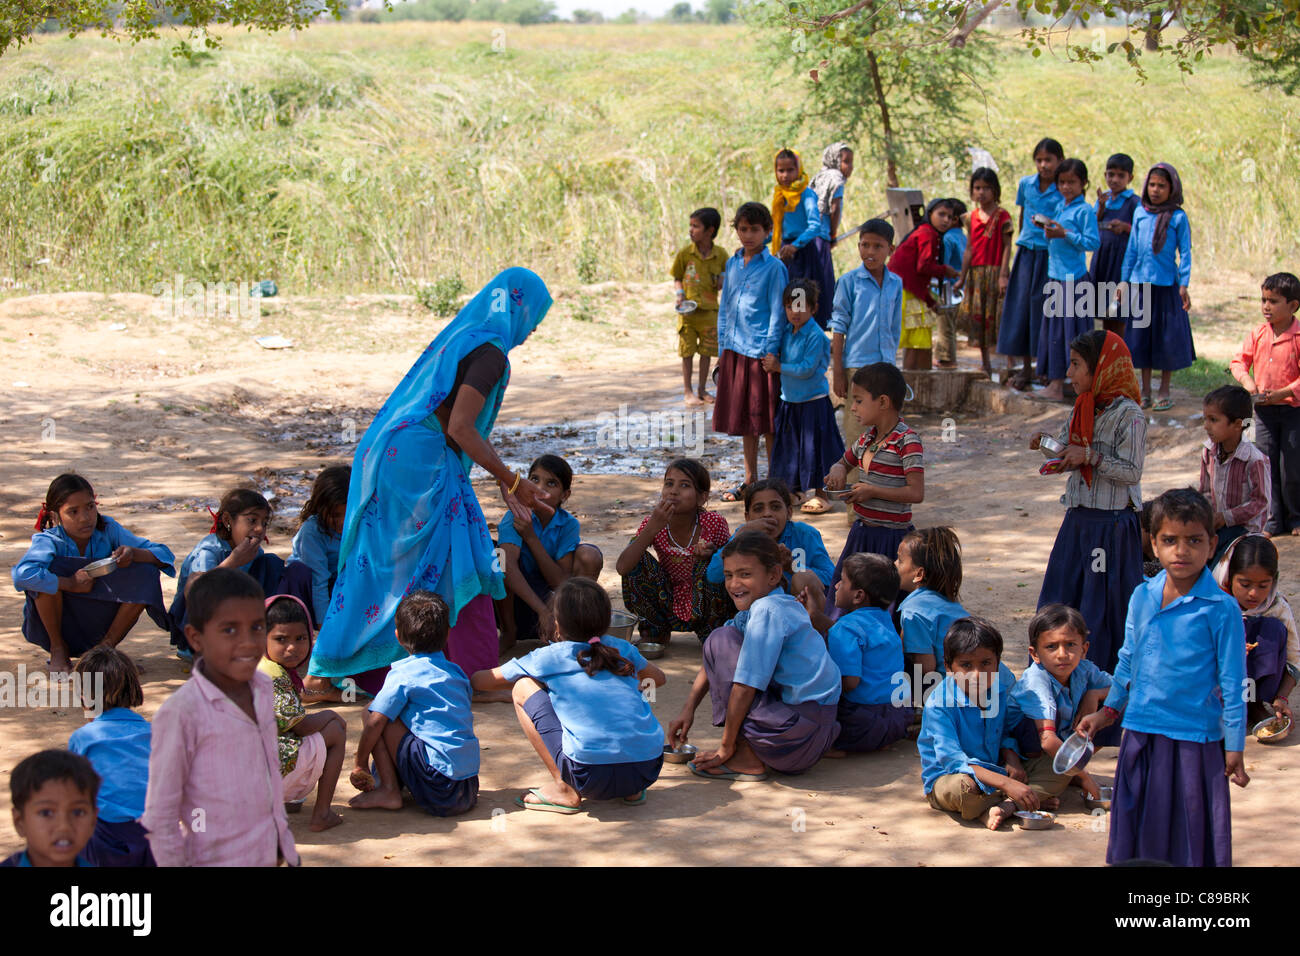 Los alumnos que asisten a la escuela en India Doeli en Sawai Madhopur, Rajasthan, India Septentrional Foto de stock